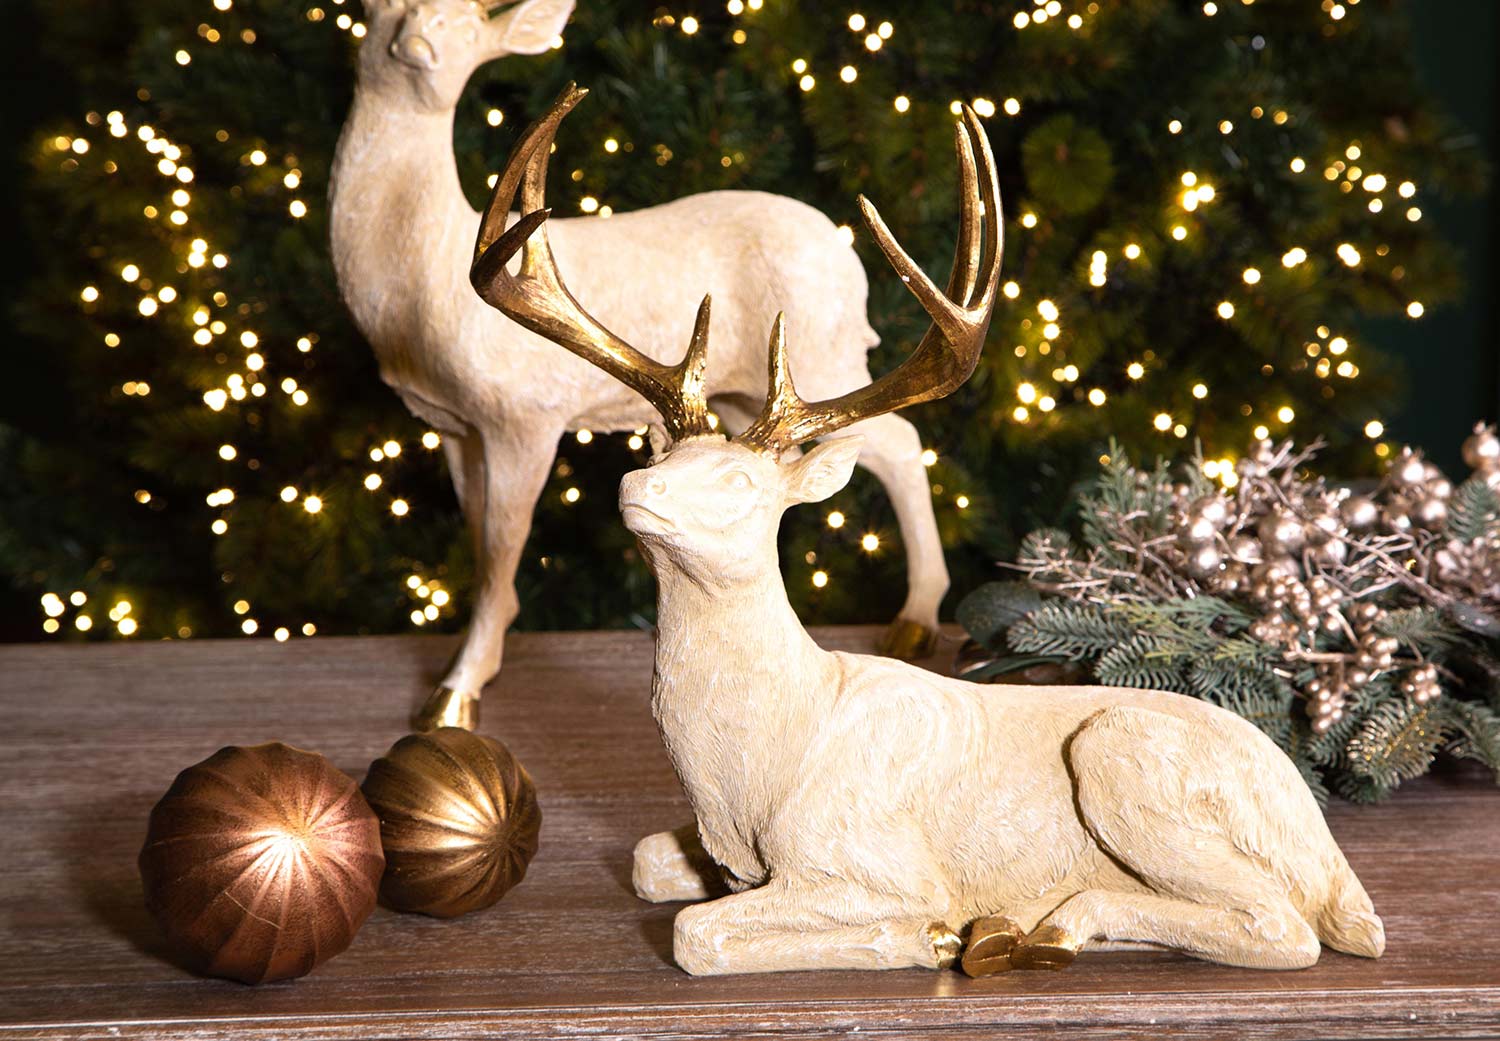 Prémium kategóriás, nagyméretű, 41,5 cm hosszú, arany színű karácsonyi szarvas figura.